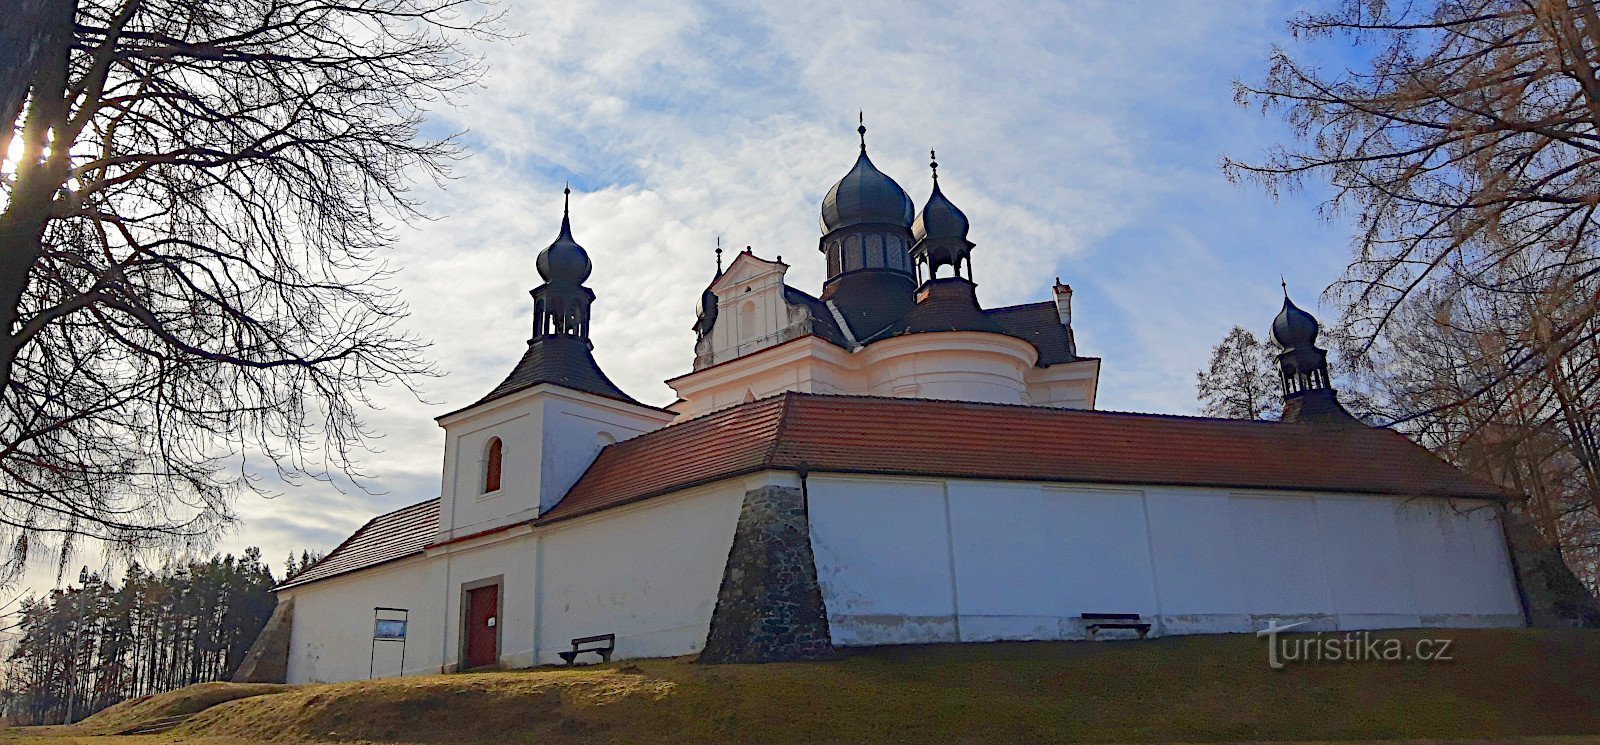 Trhové Sviny - pellegrinaggio Chiesa barocca della Santissima Trinità